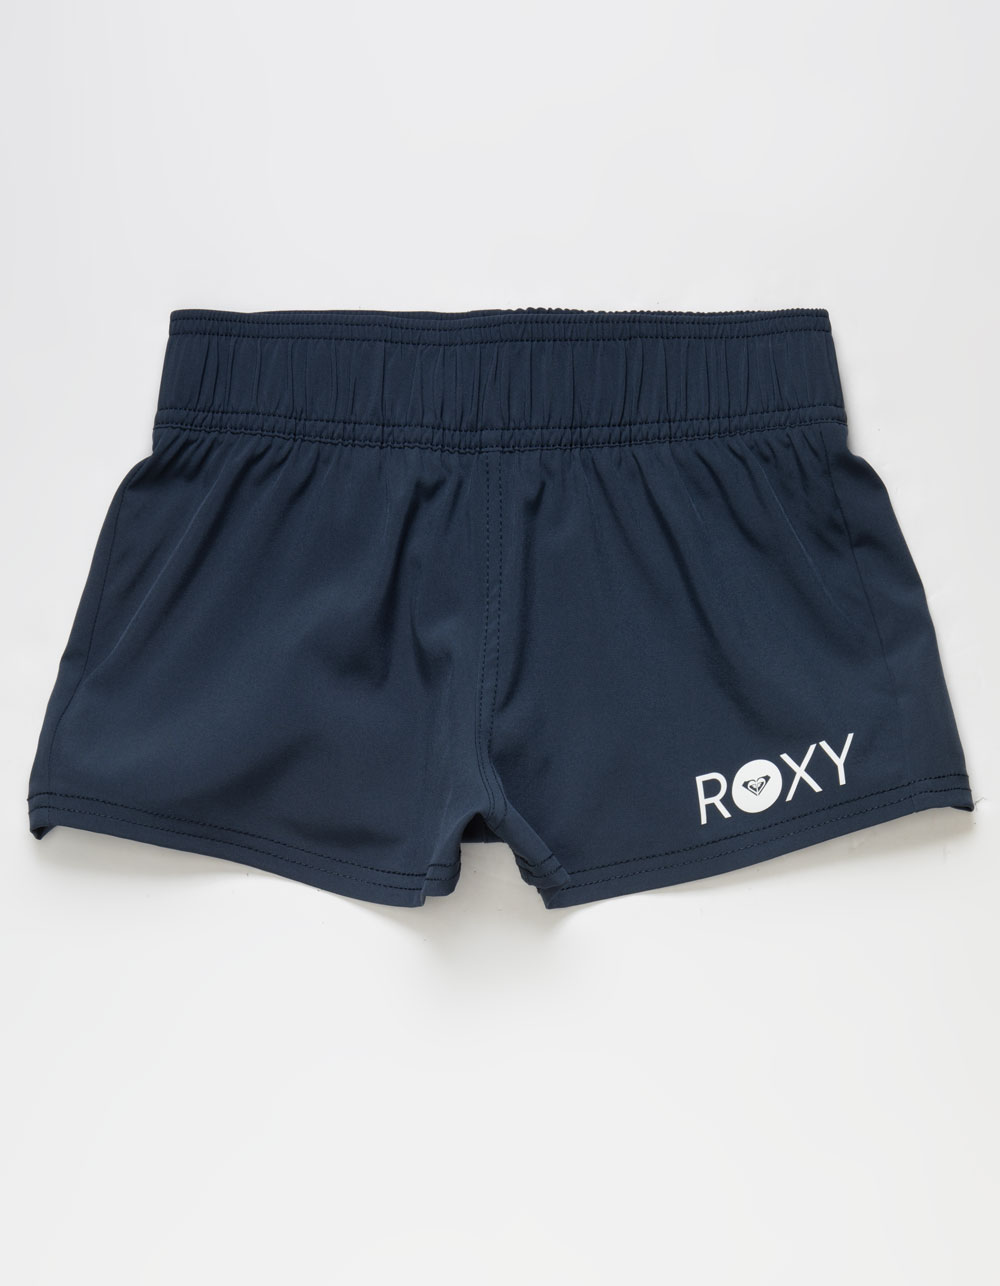 ROXY Essentials Girls Boardshorts